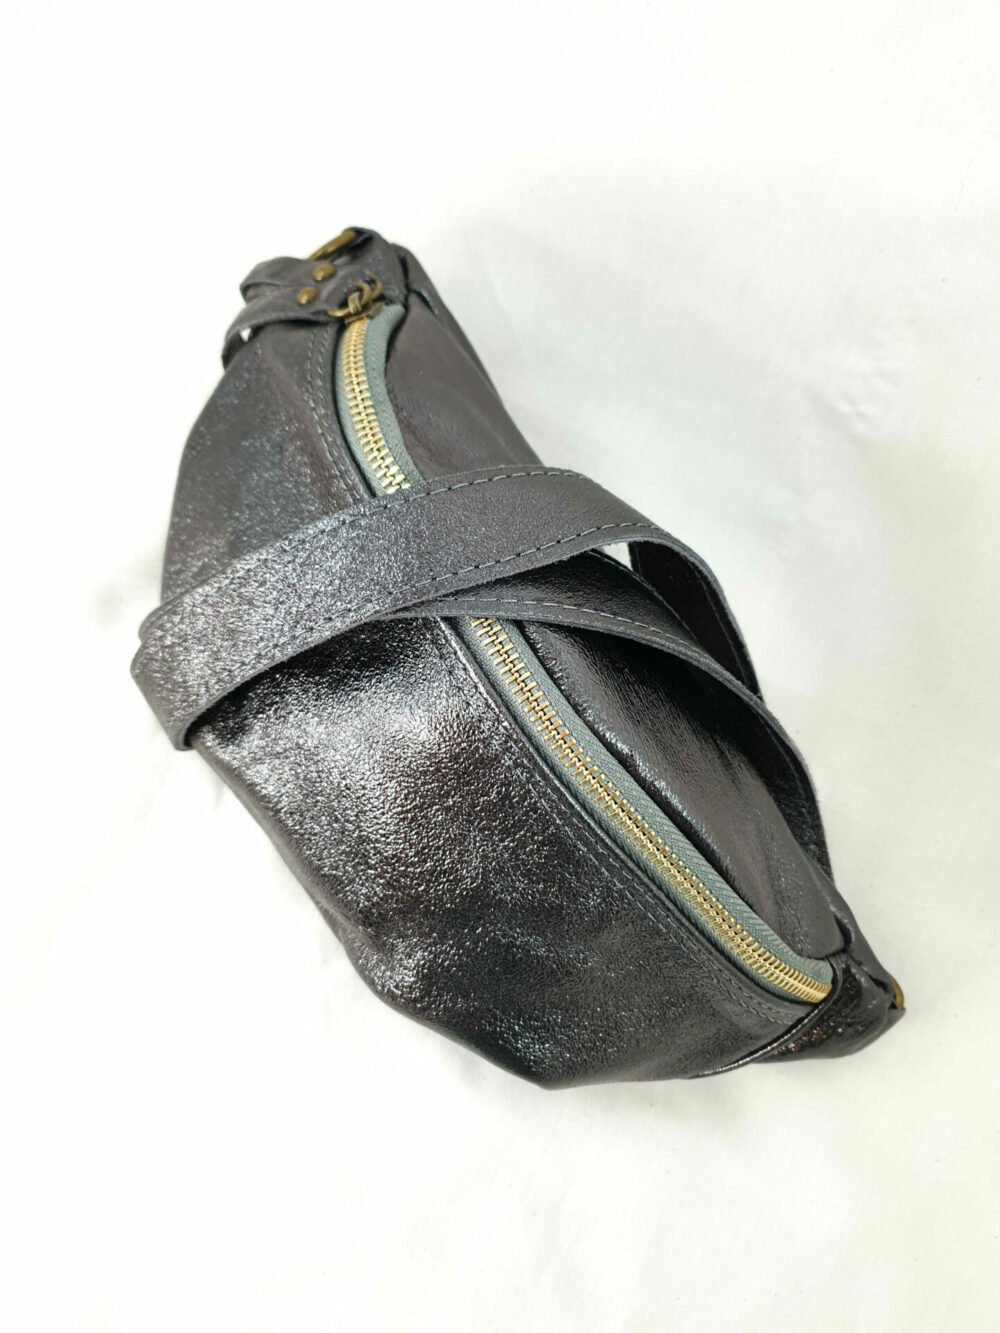 sac porte monnaie banane cuir metalisé barcelone barcelona maroquinerie fantaisie coloré bandouliére pratique rangements